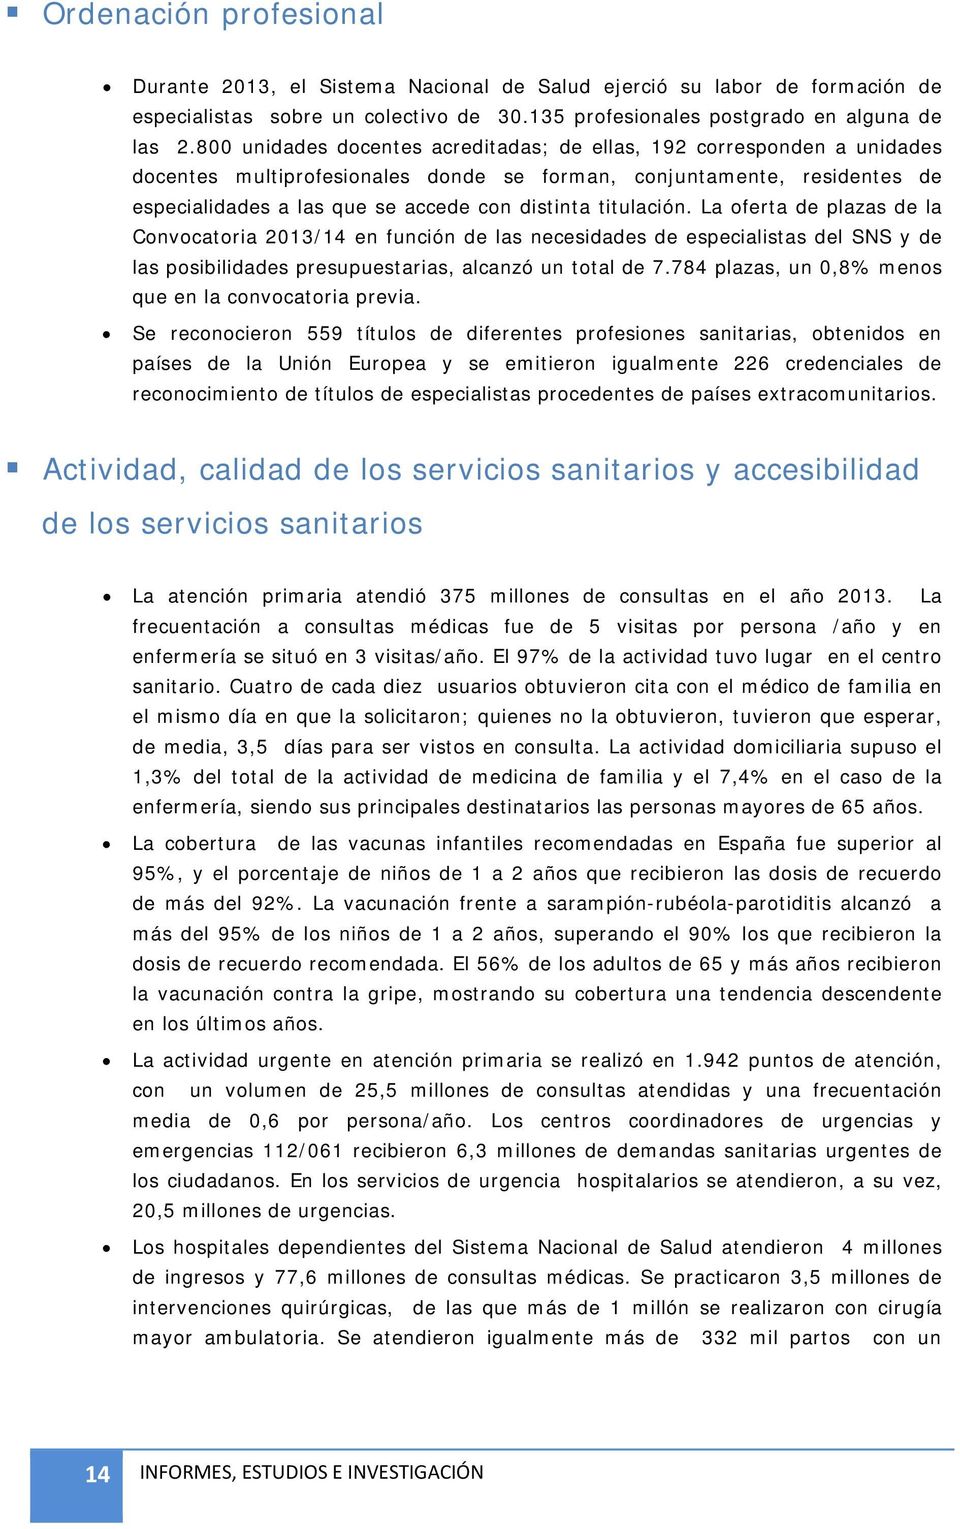 titulación. La oferta de plazas de la Convocatoria 2013/14 en función de las necesidades de especialistas del SNS y de las posibilidades presupuestarias, alcanzó un total de 7.